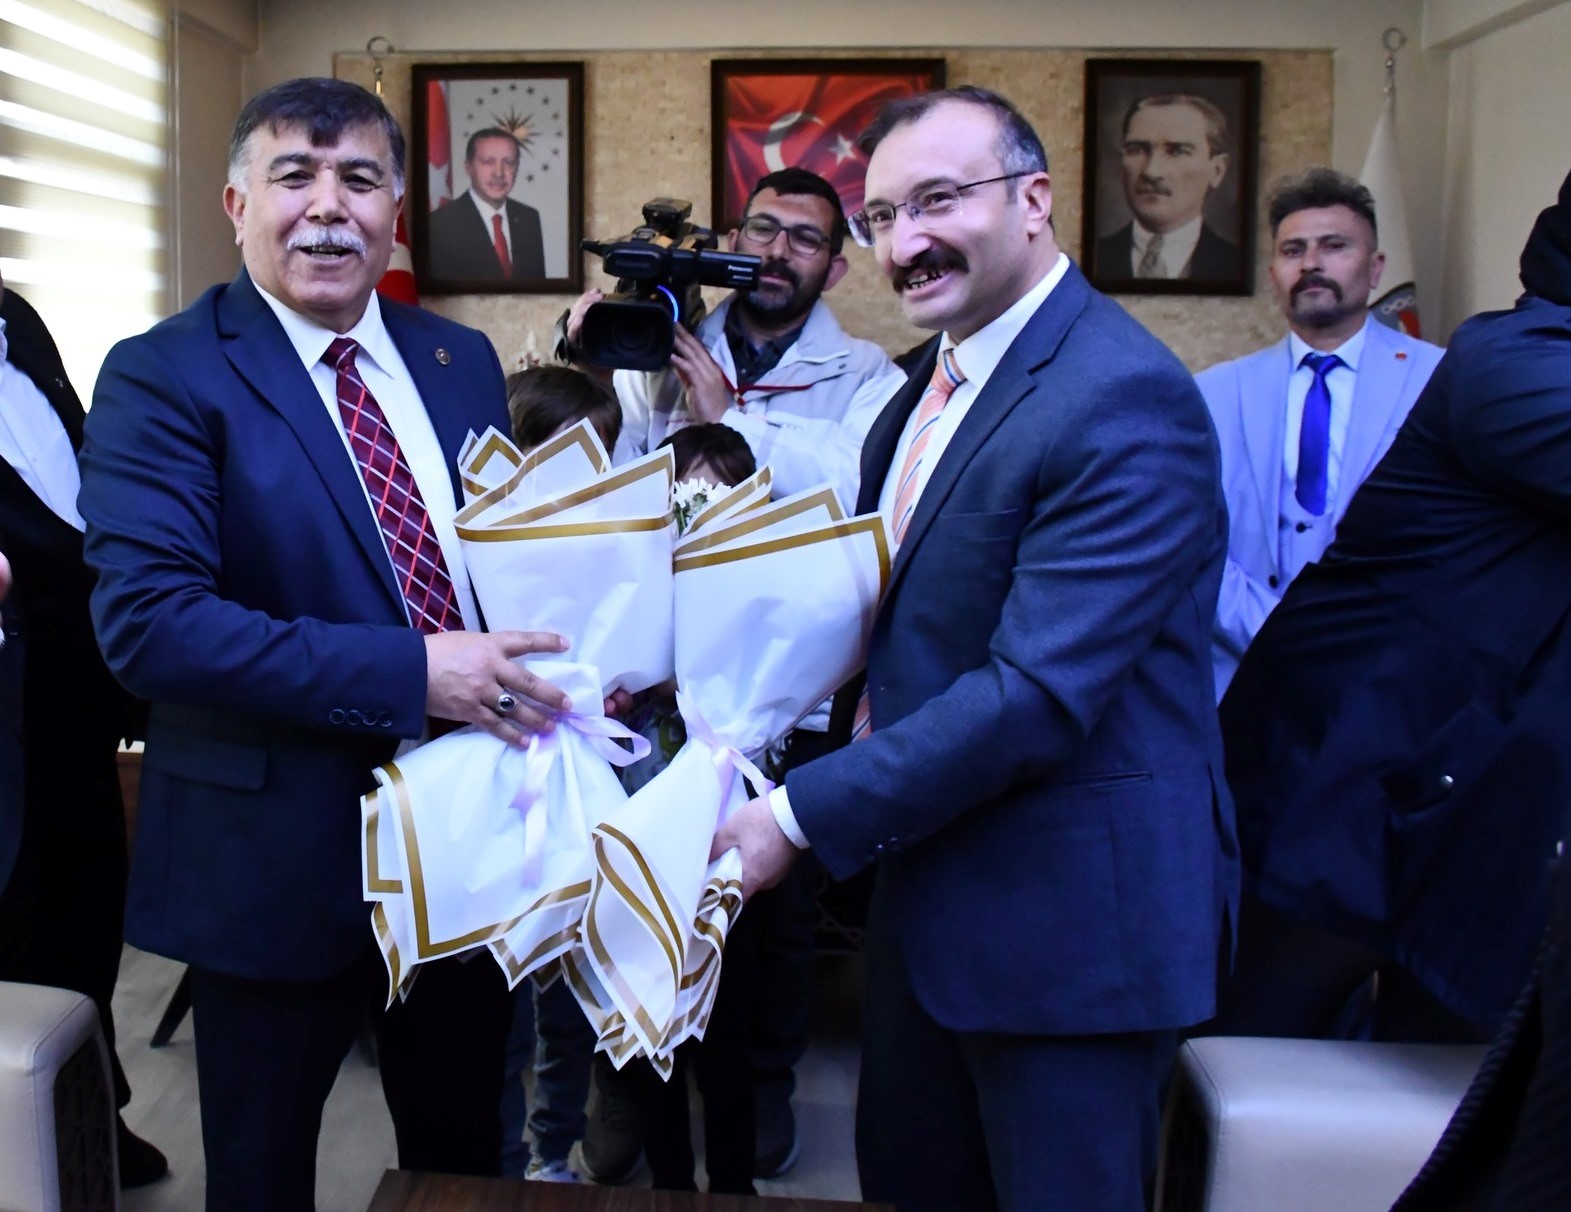 Emet Belediye Başkanı Mustafa Koca, görevi Hüseyin Doğan’dan devraldı